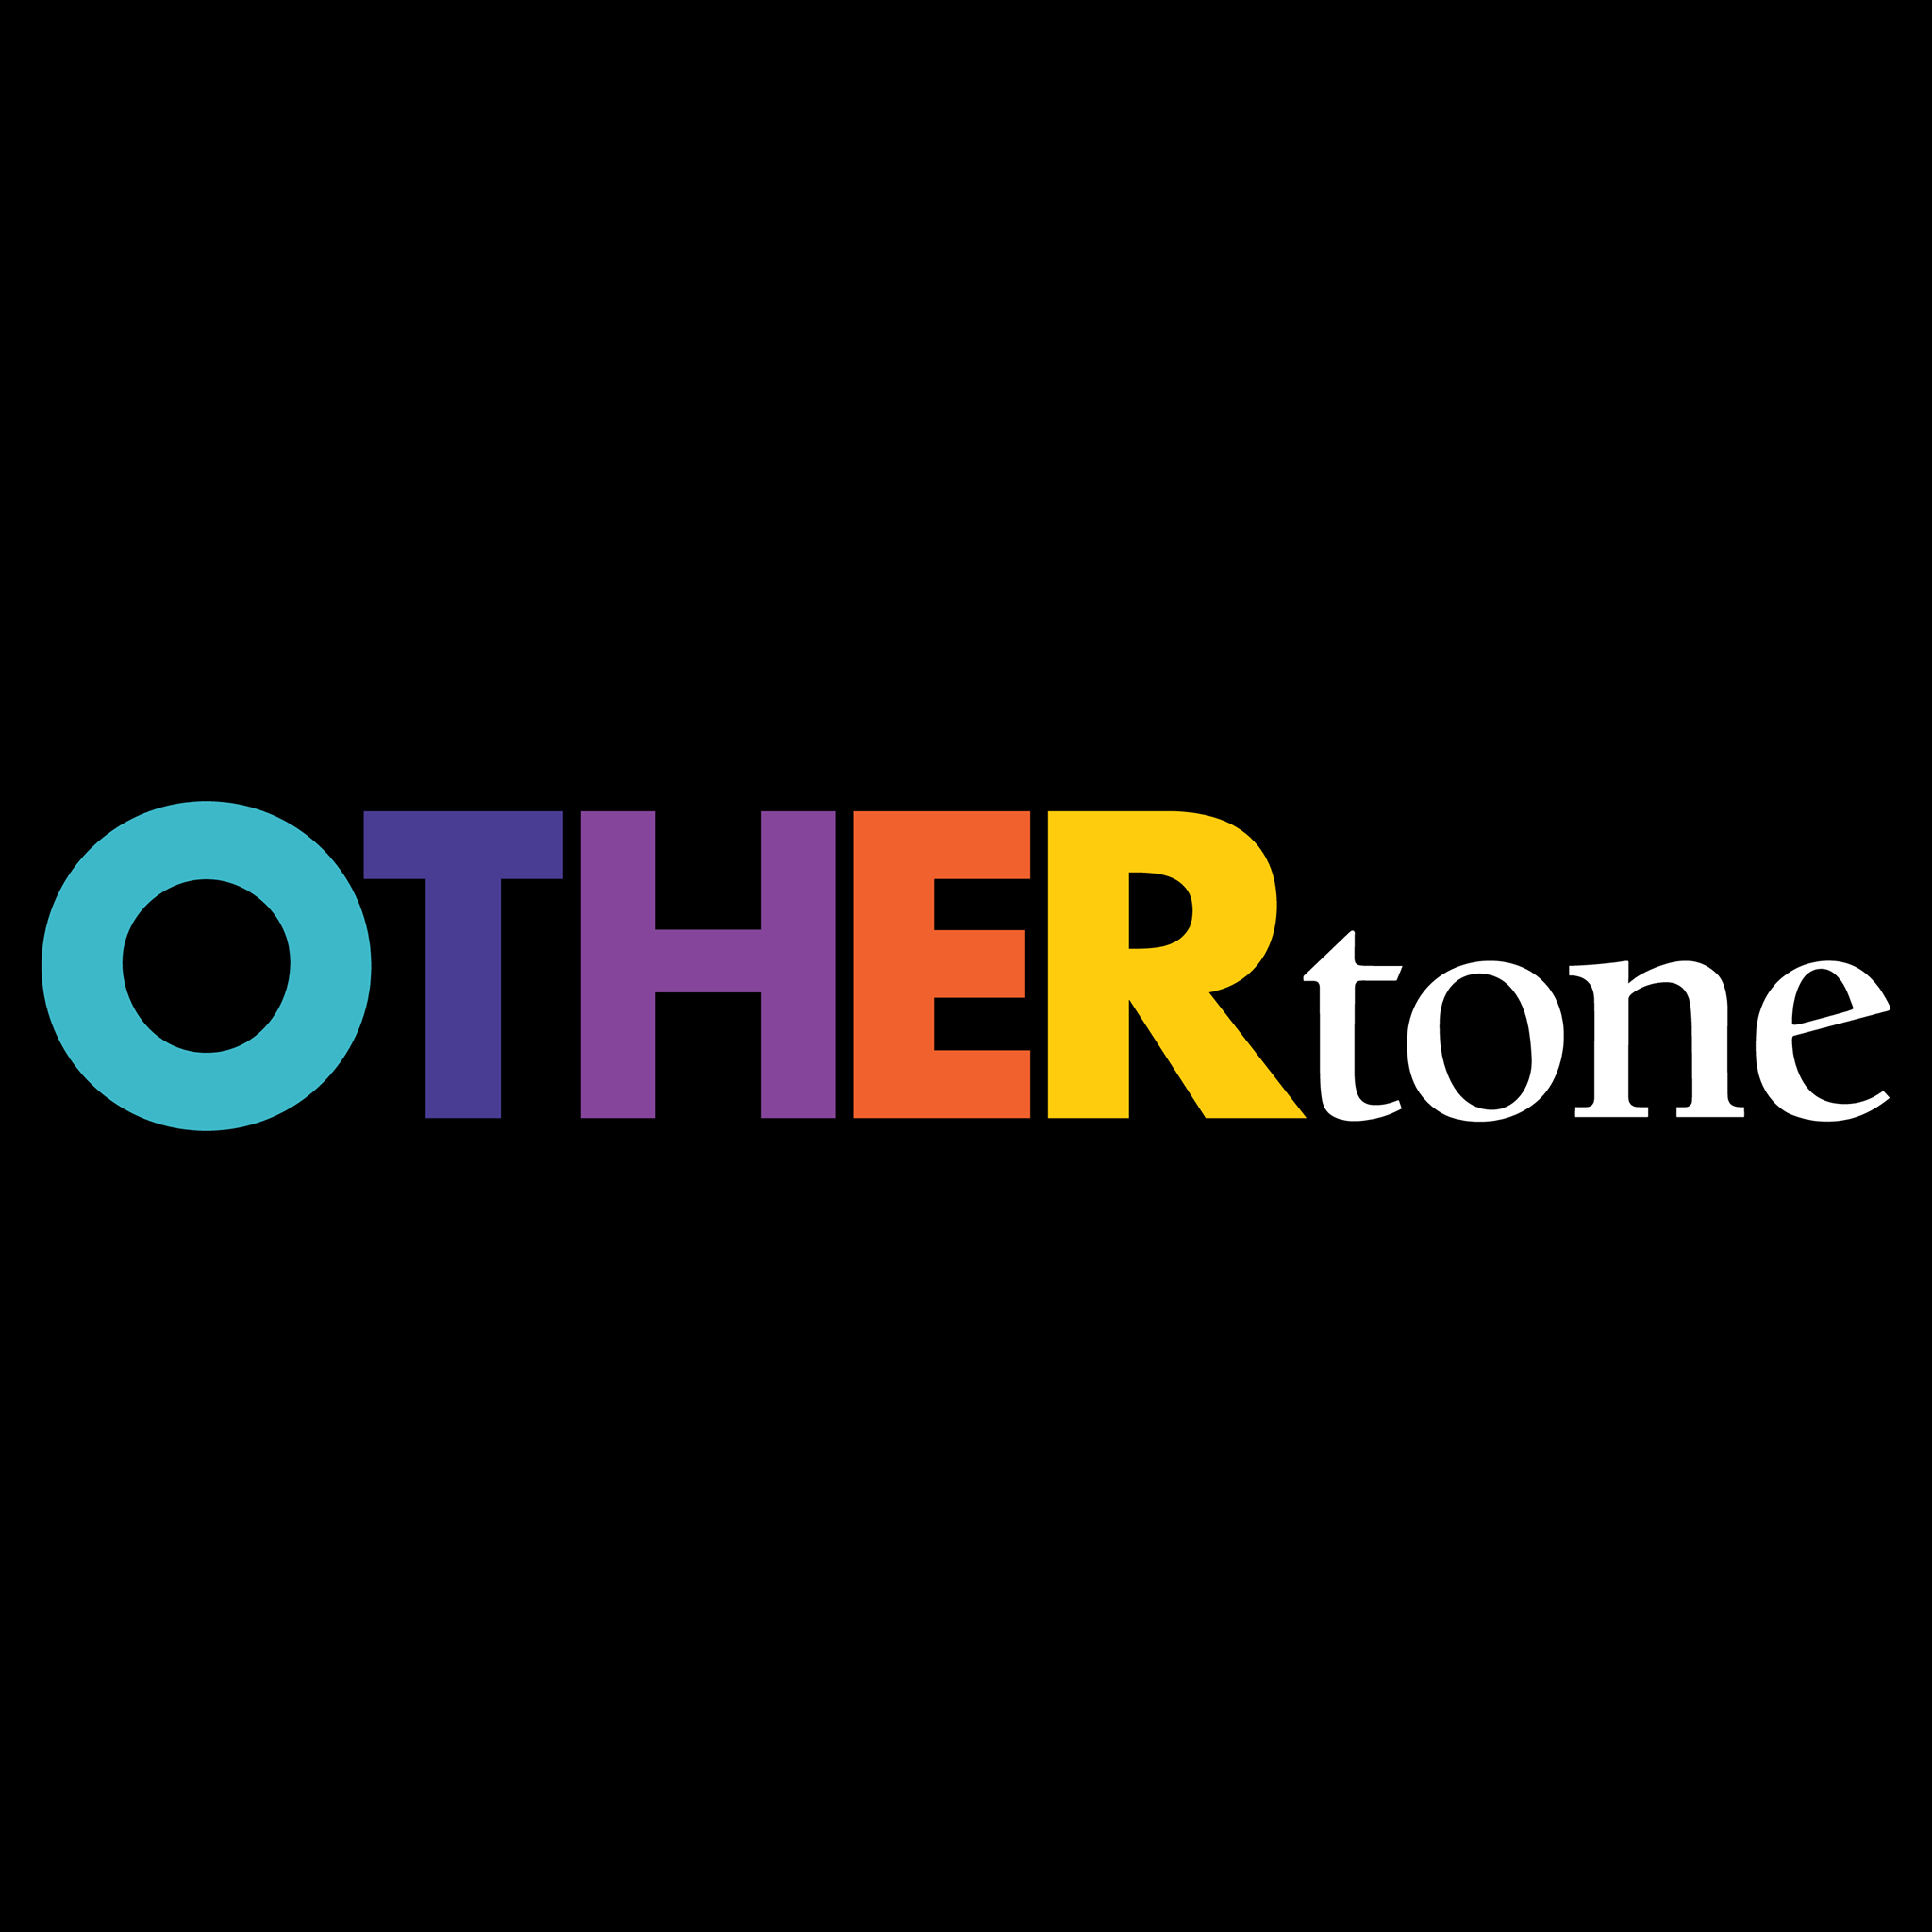 OTHERtone